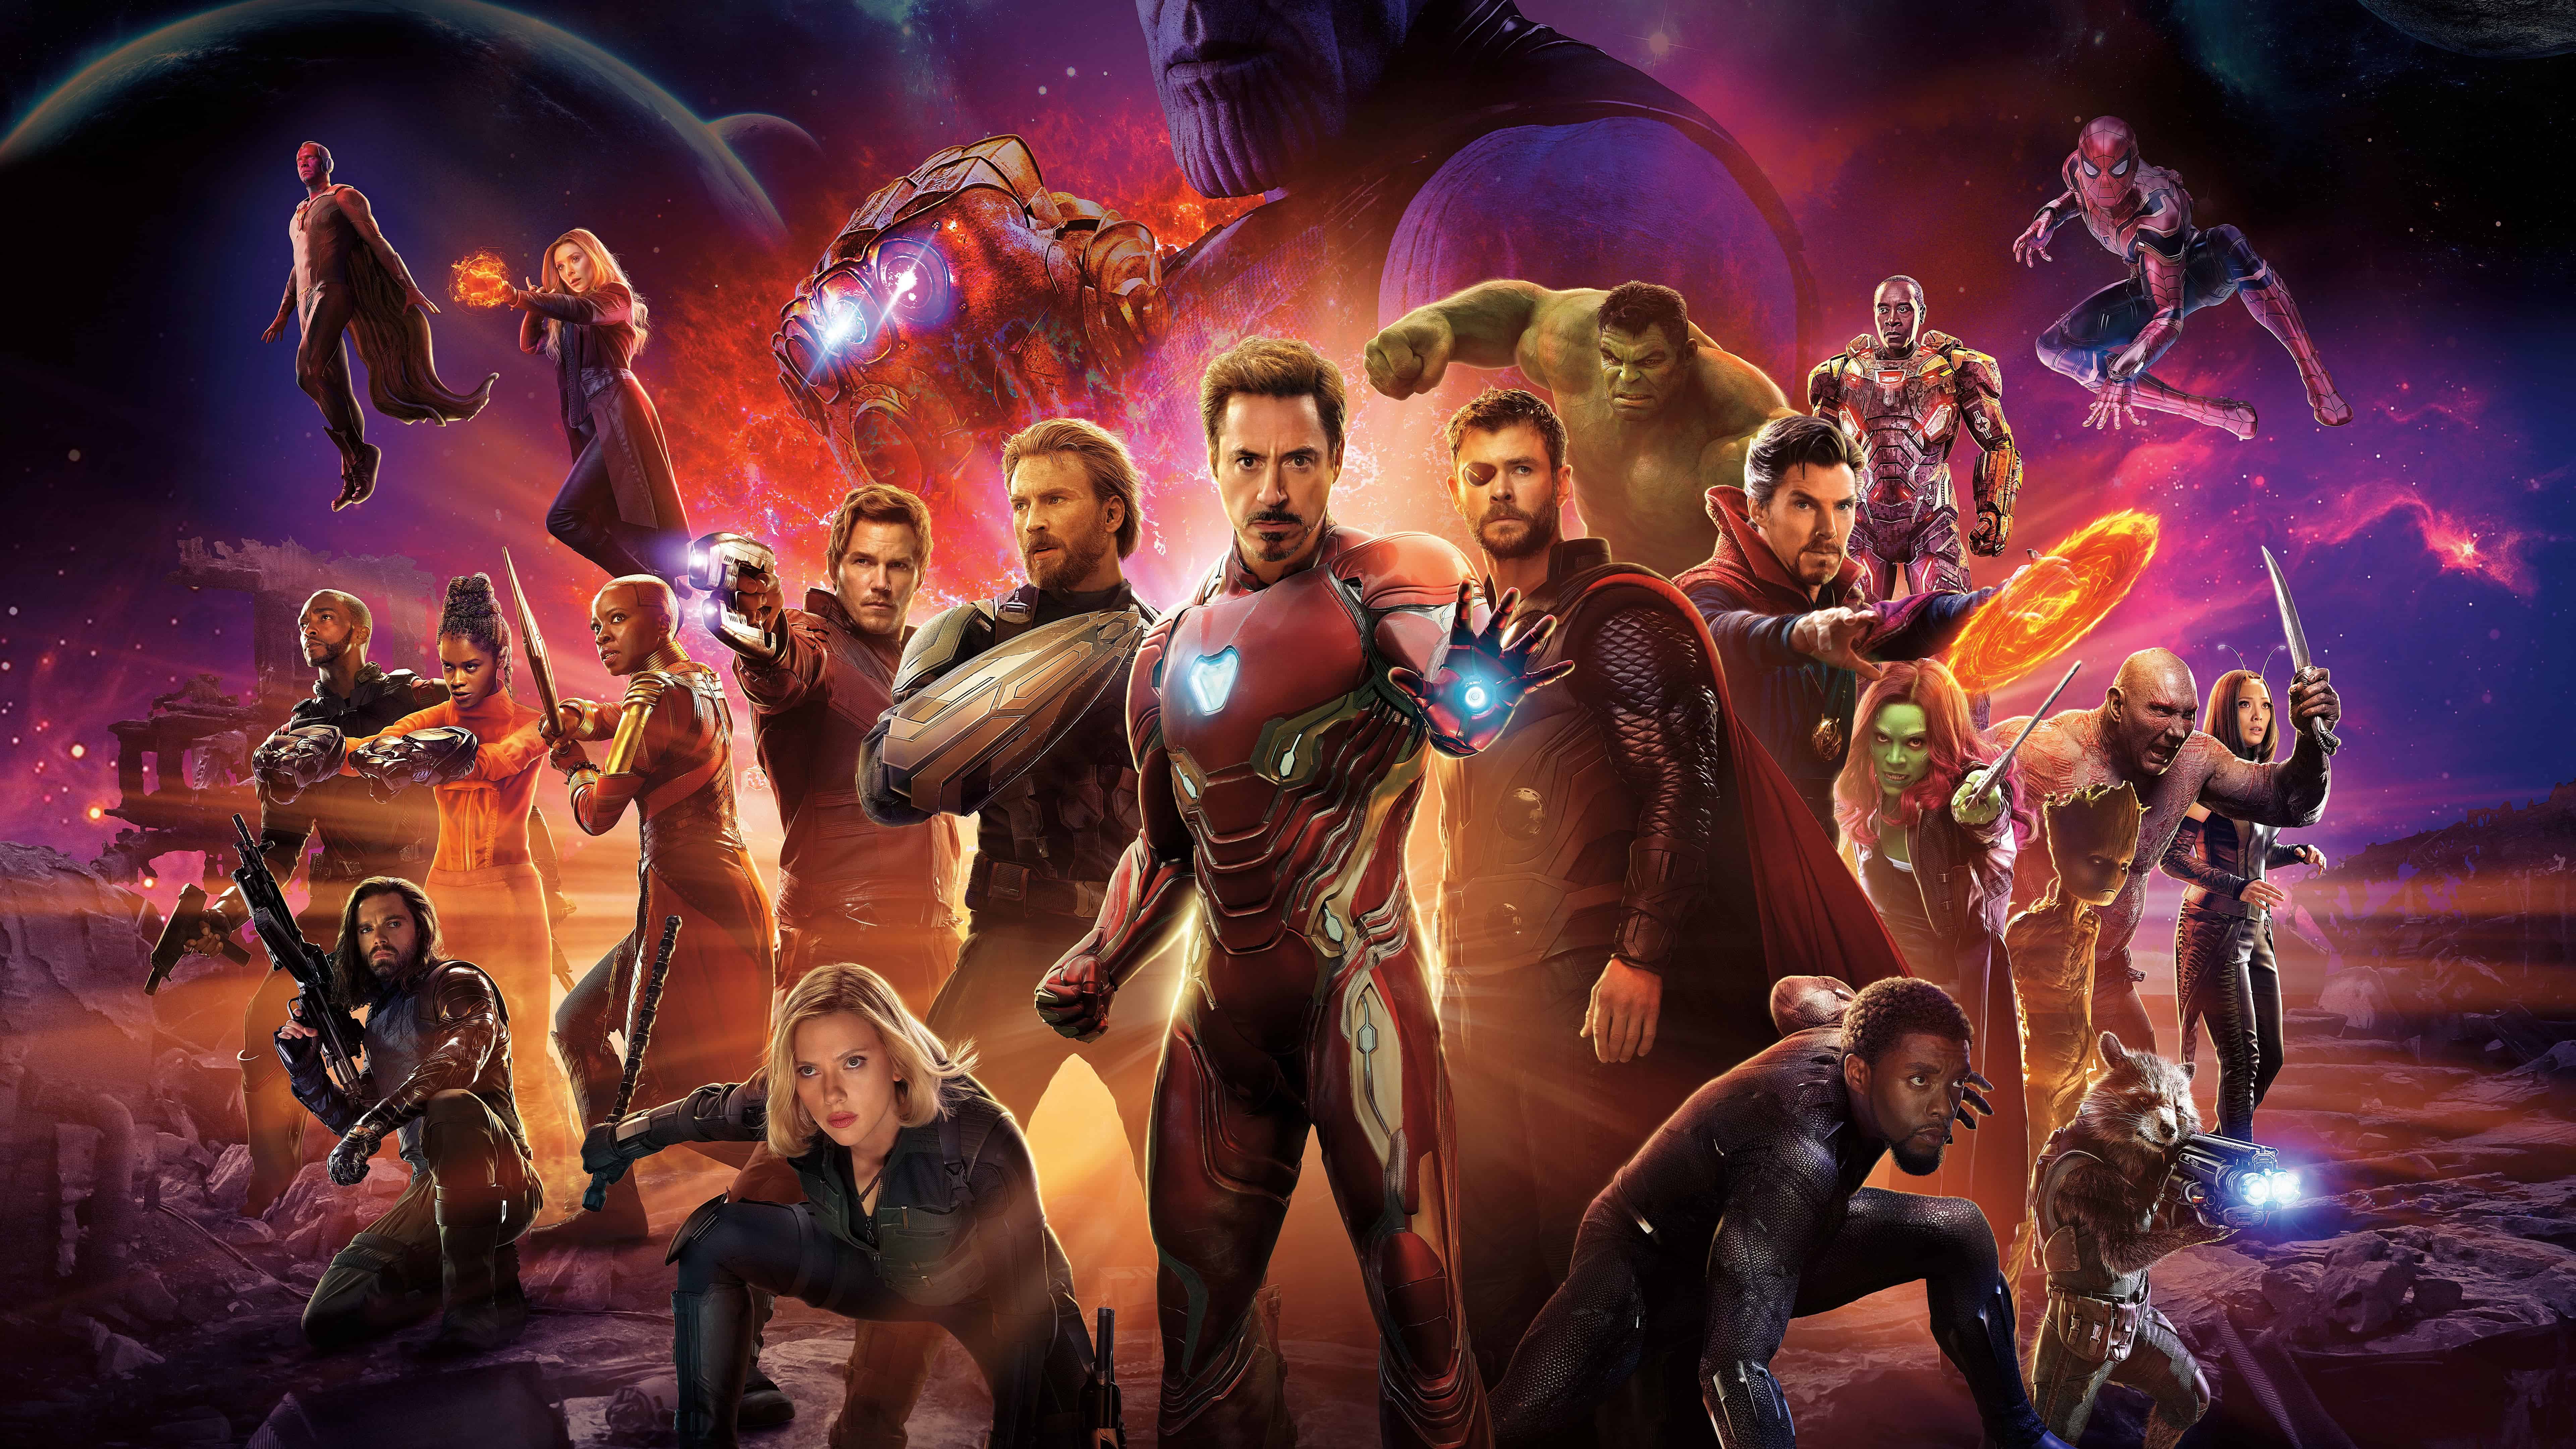 Những tín đồ của siêu anh hùng Marvel sẽ không thể bỏ qua chủ đề này! Bộ sưu tập 8k Wallpapers của Avengers sẽ khiến cho màn hình điện thoại hay máy tính của bạn trở thành một bảng họa sẵn sàng cho cuộc chiến giữa các siêu anh hùng và siêu ác nhân. Hãy tải ngay cho mình những bức hình nền siêu đẹp này!